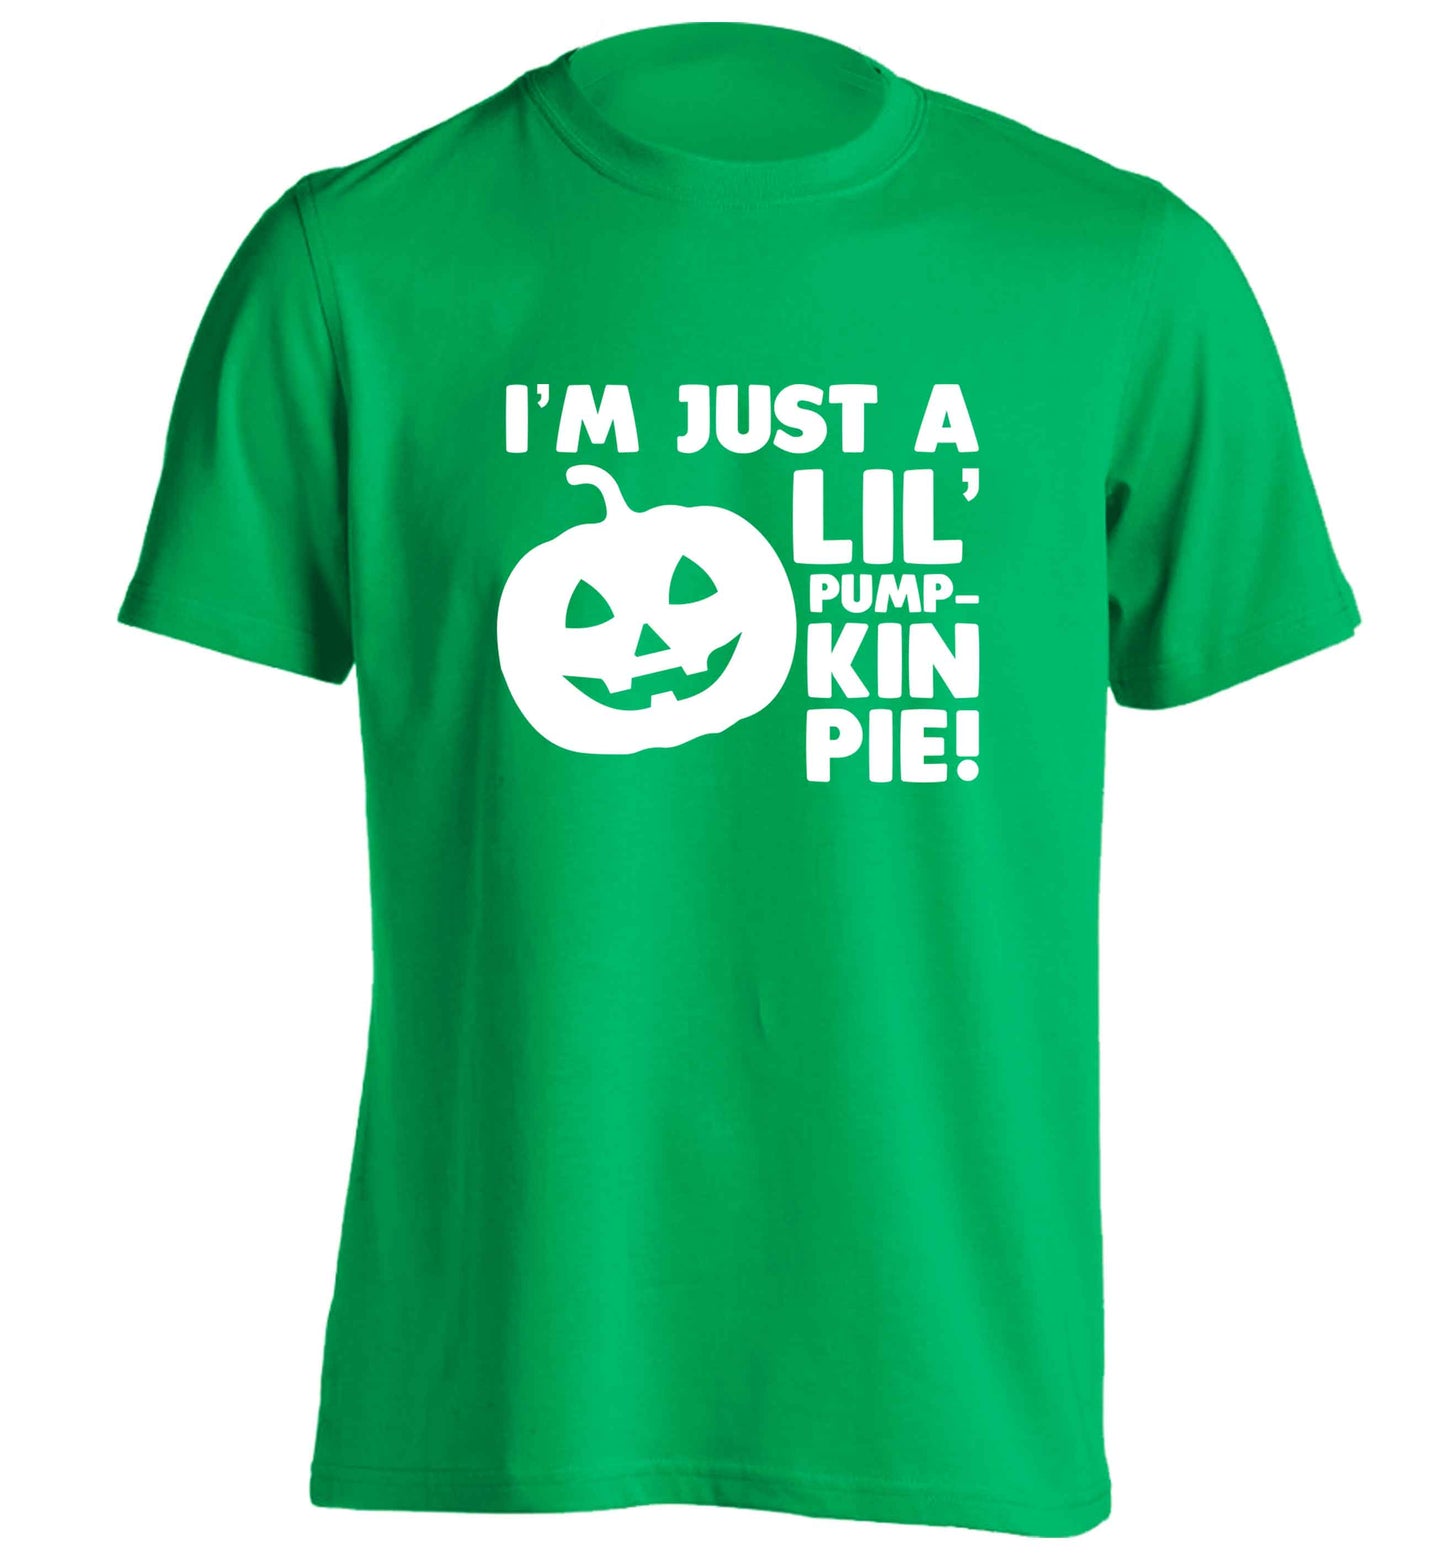 I'm just a lil' pumpkin pie adults unisex green Tshirt 2XL